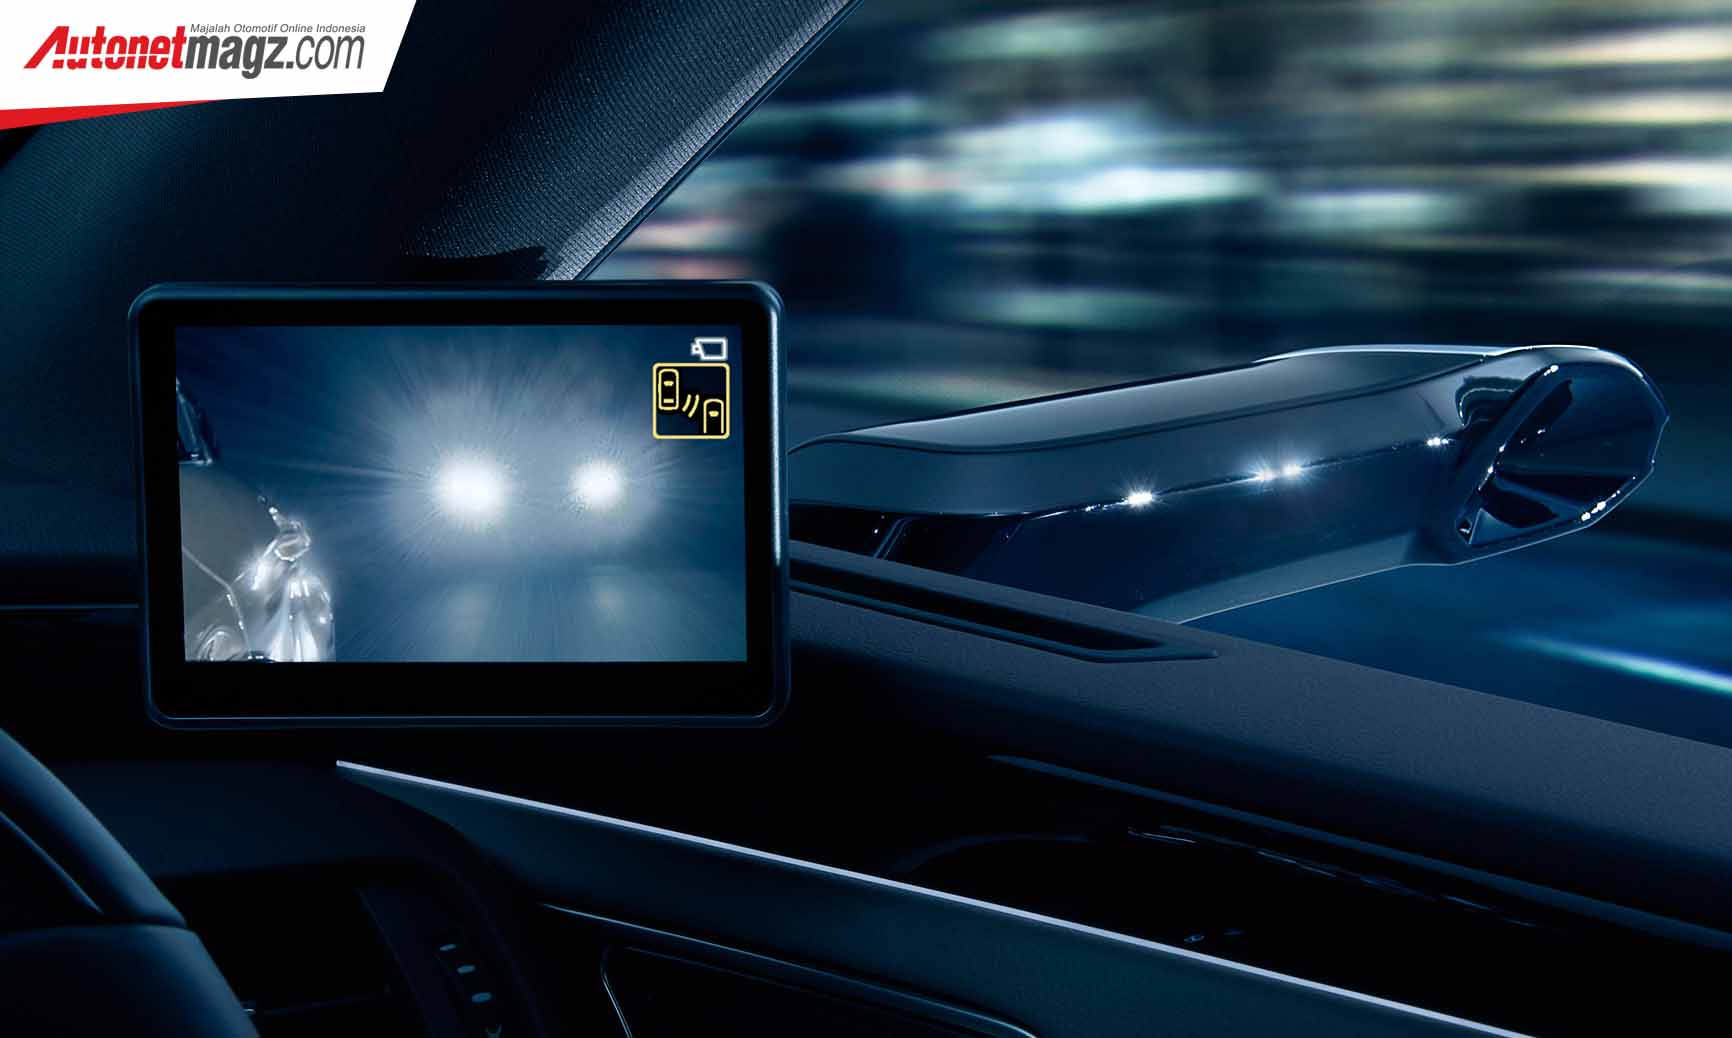 Berita, Layar Digital Outer Mirrors Lexus malam hari: Lexus : Pakai Spion? Waktunya Pakai Kamera Sob!